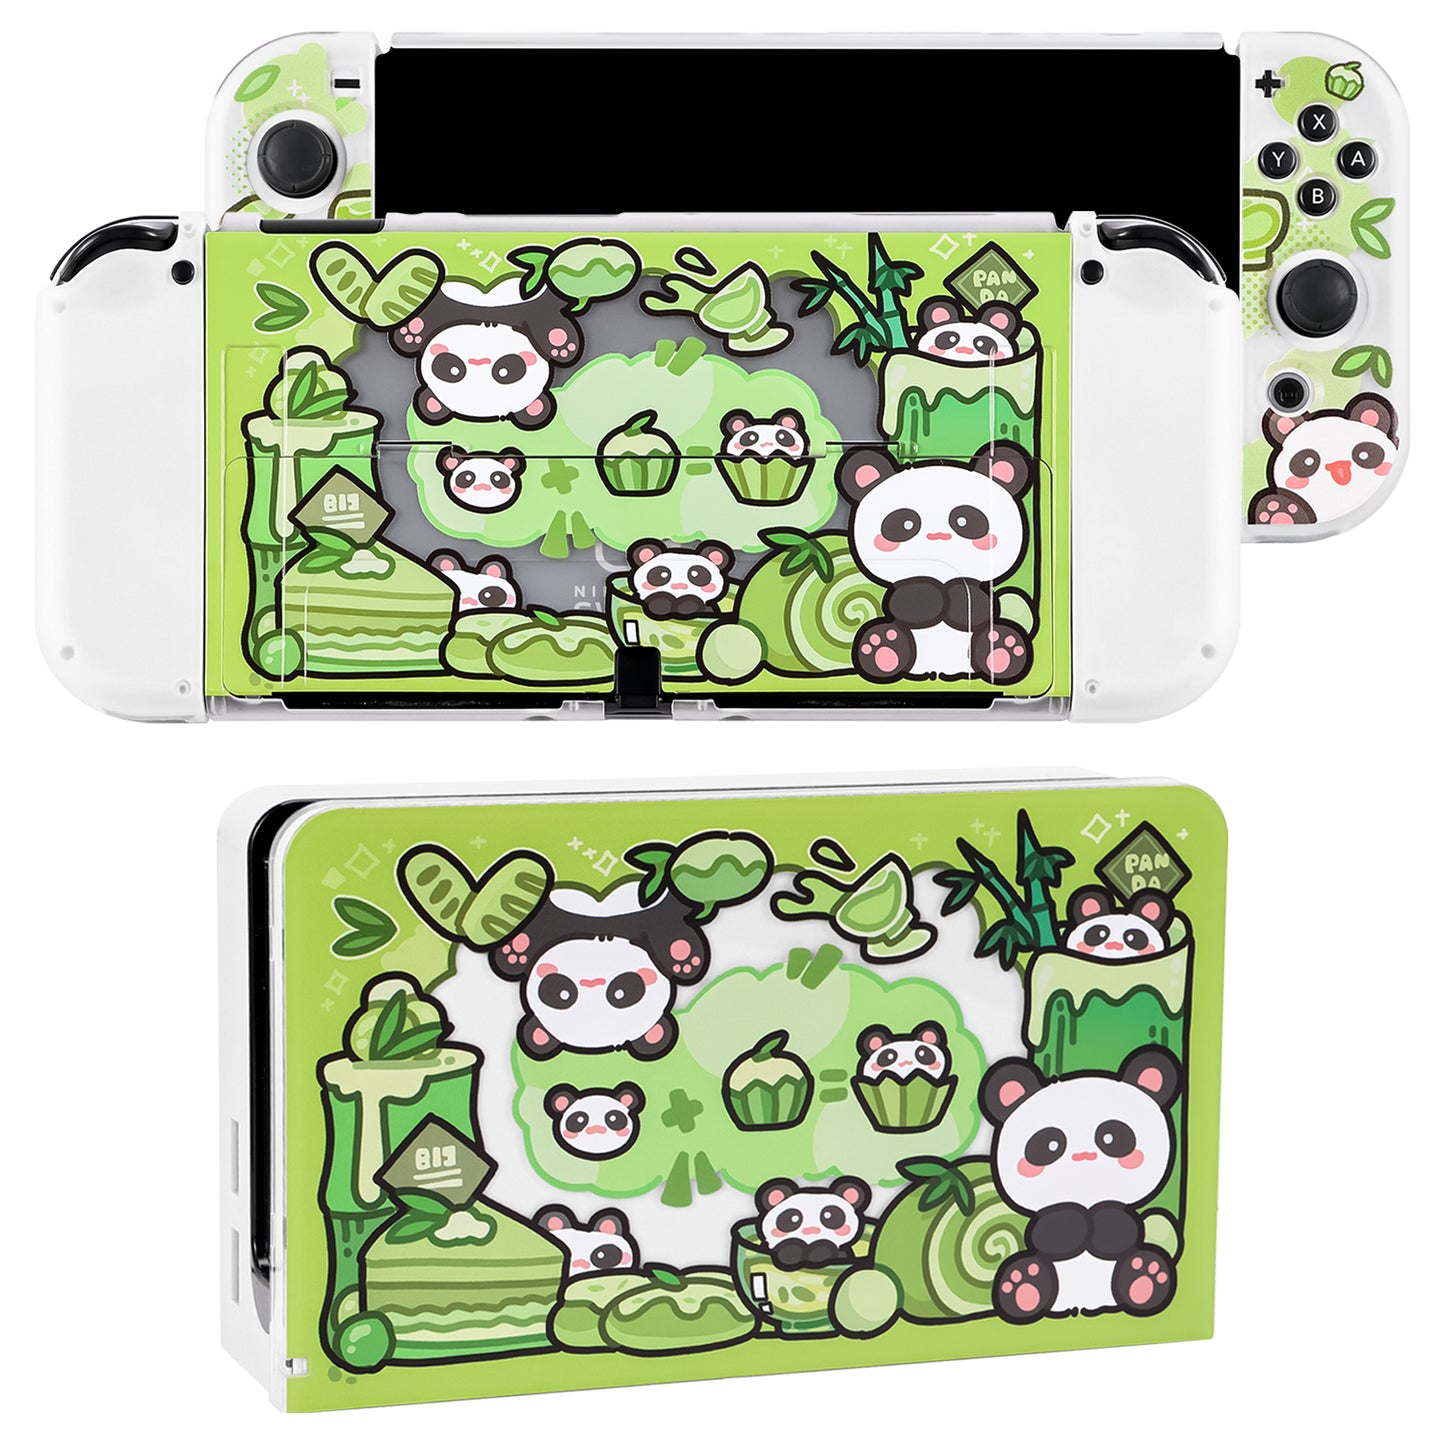 Switch OLED Case - Cute Panda